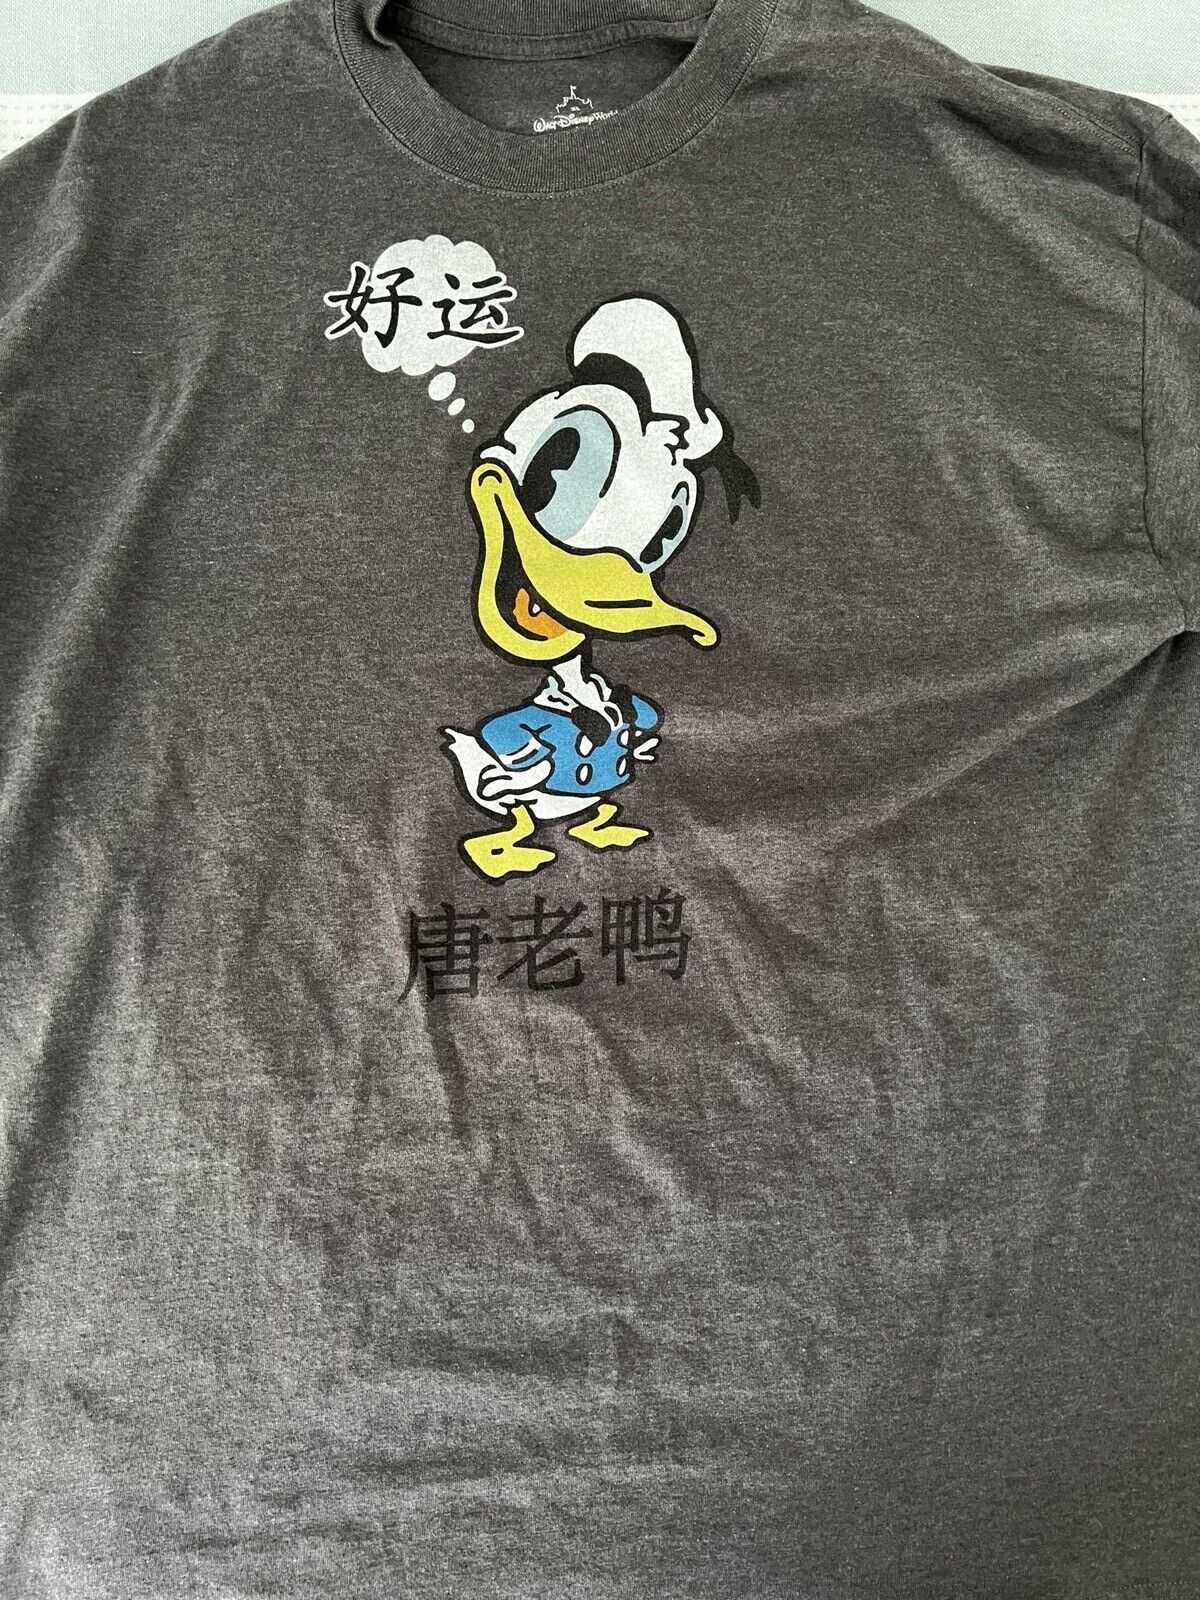 Walt Disney World Parks Donald Duck T Shirt Dark Gray XL